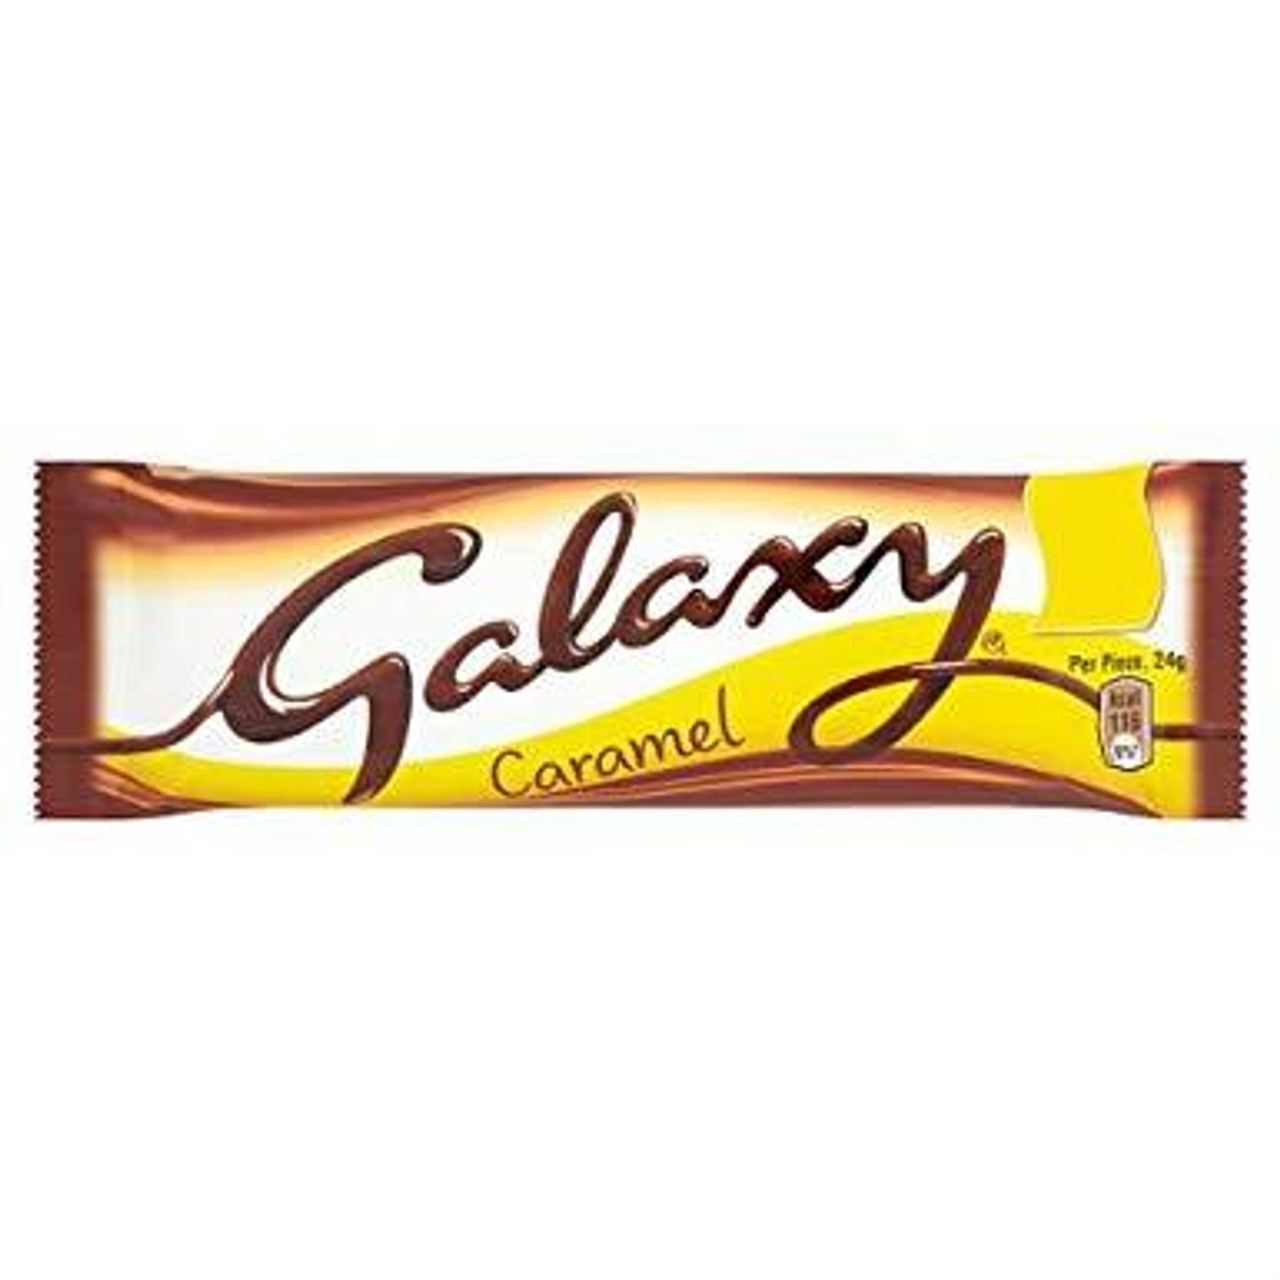 Mars - Galaxy Caramel, 42g - British Pedlar